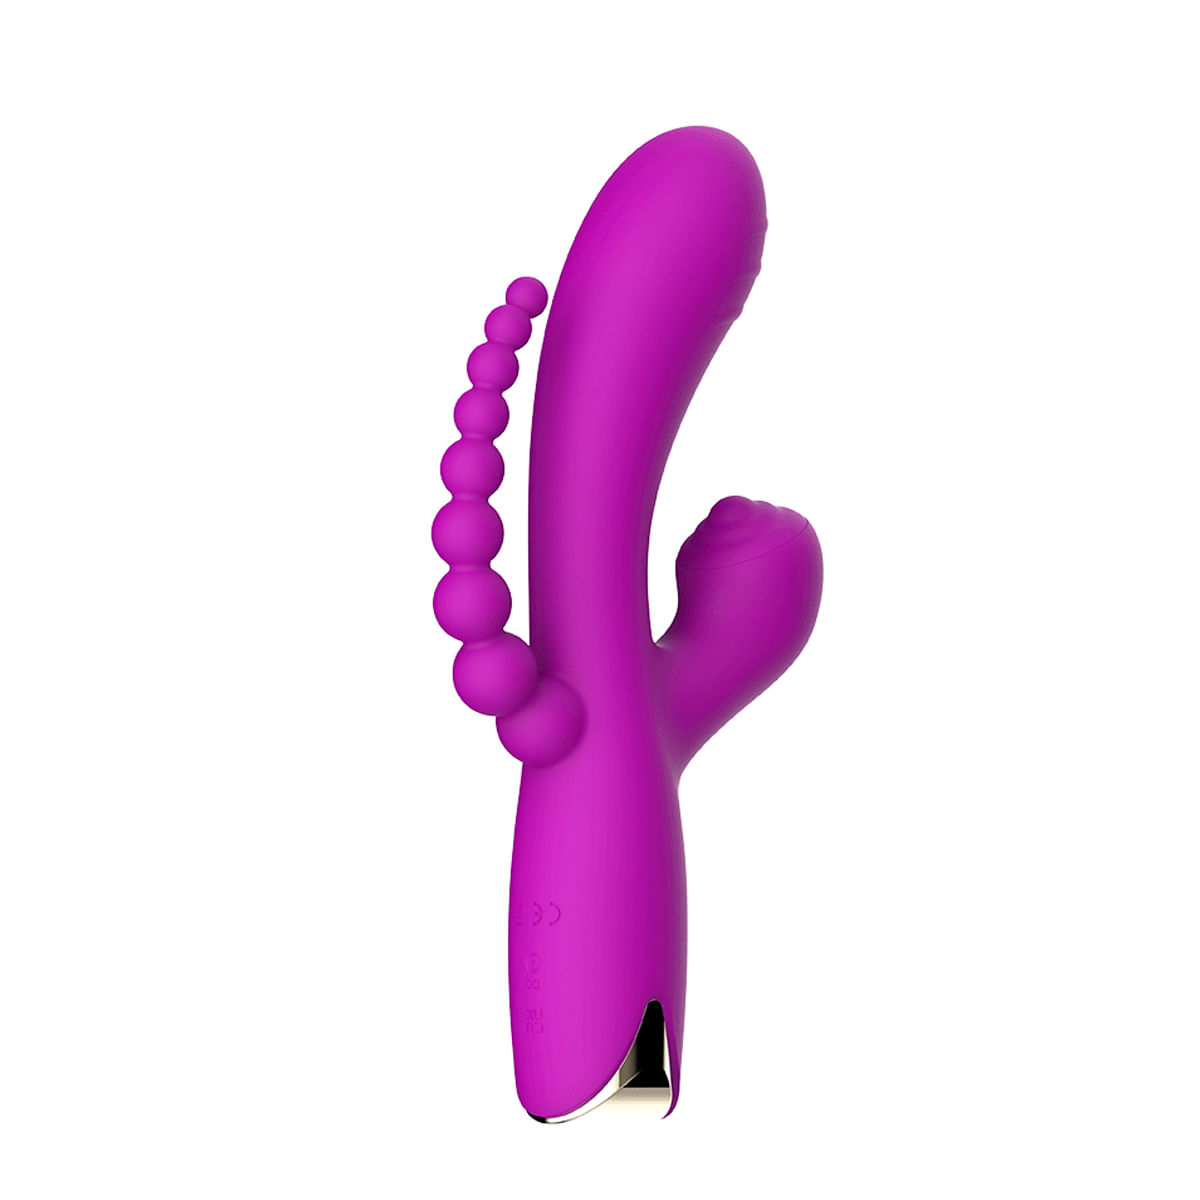 Snappy Bunny Vibrador, Estimulador de Clitoris e Plug Anal com 10 Modos de Vibração Vip Mix